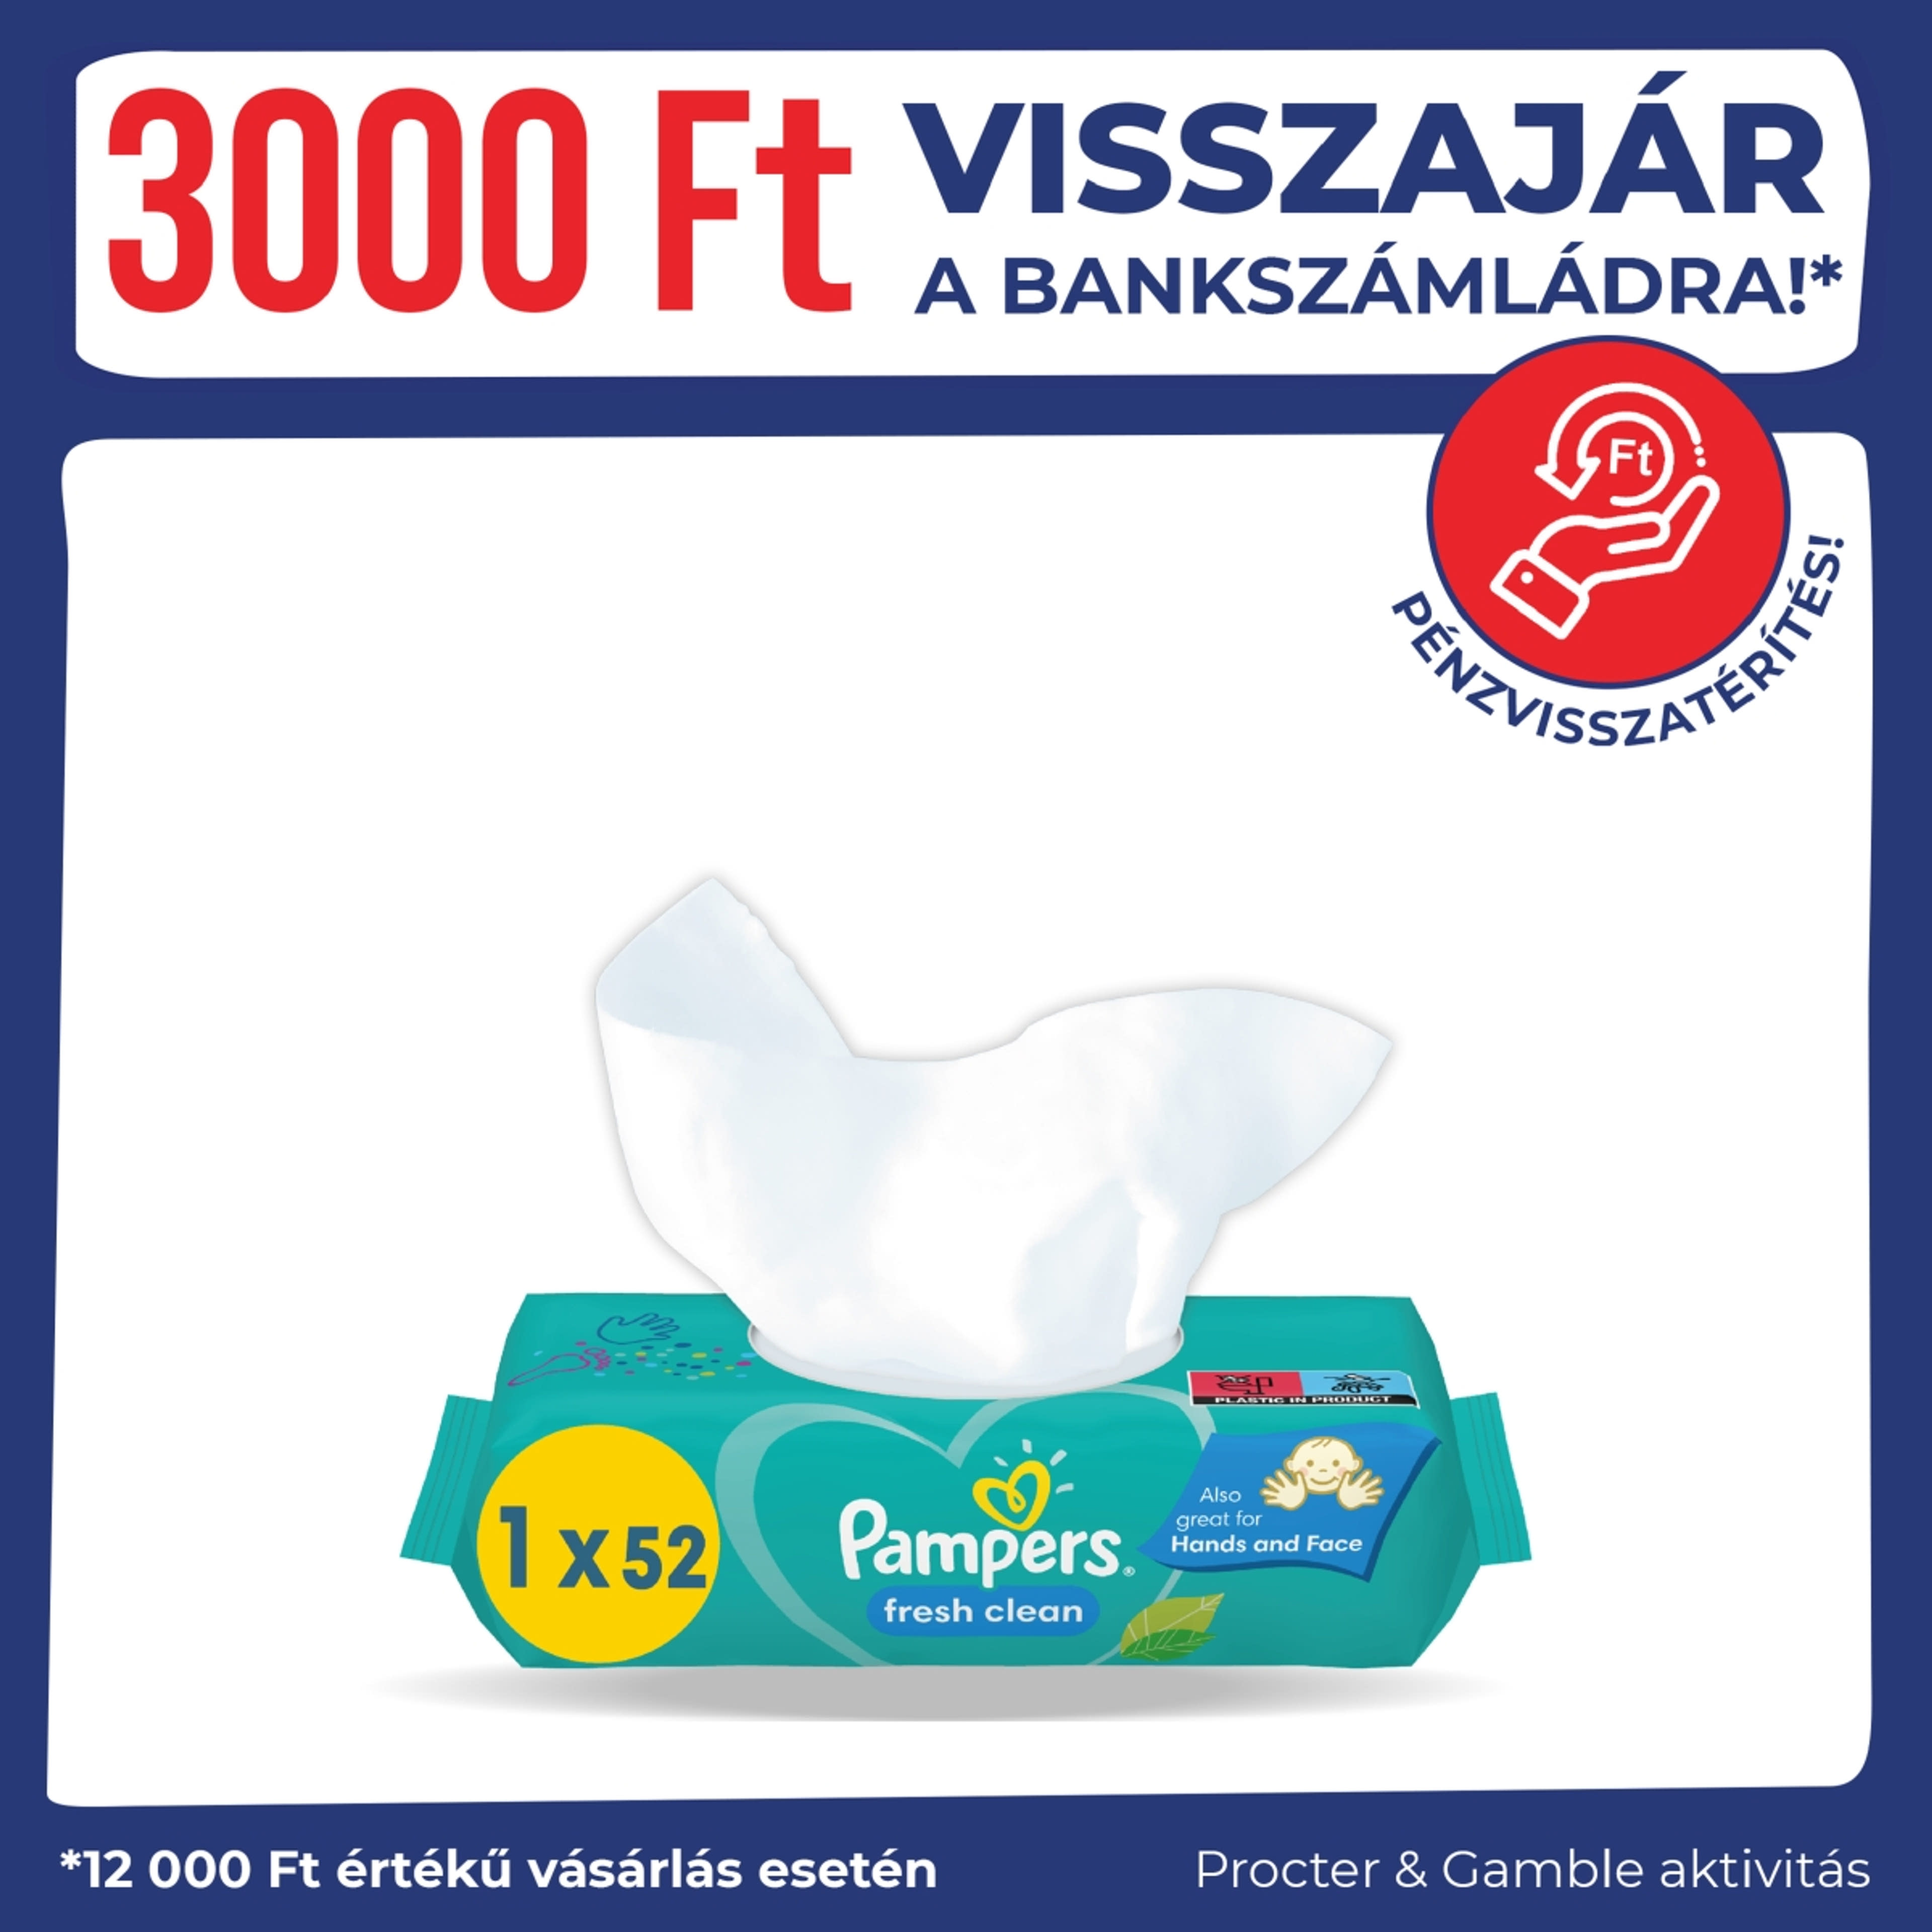 Pampers fresh clean törlőkendő (4x52) - 208 db